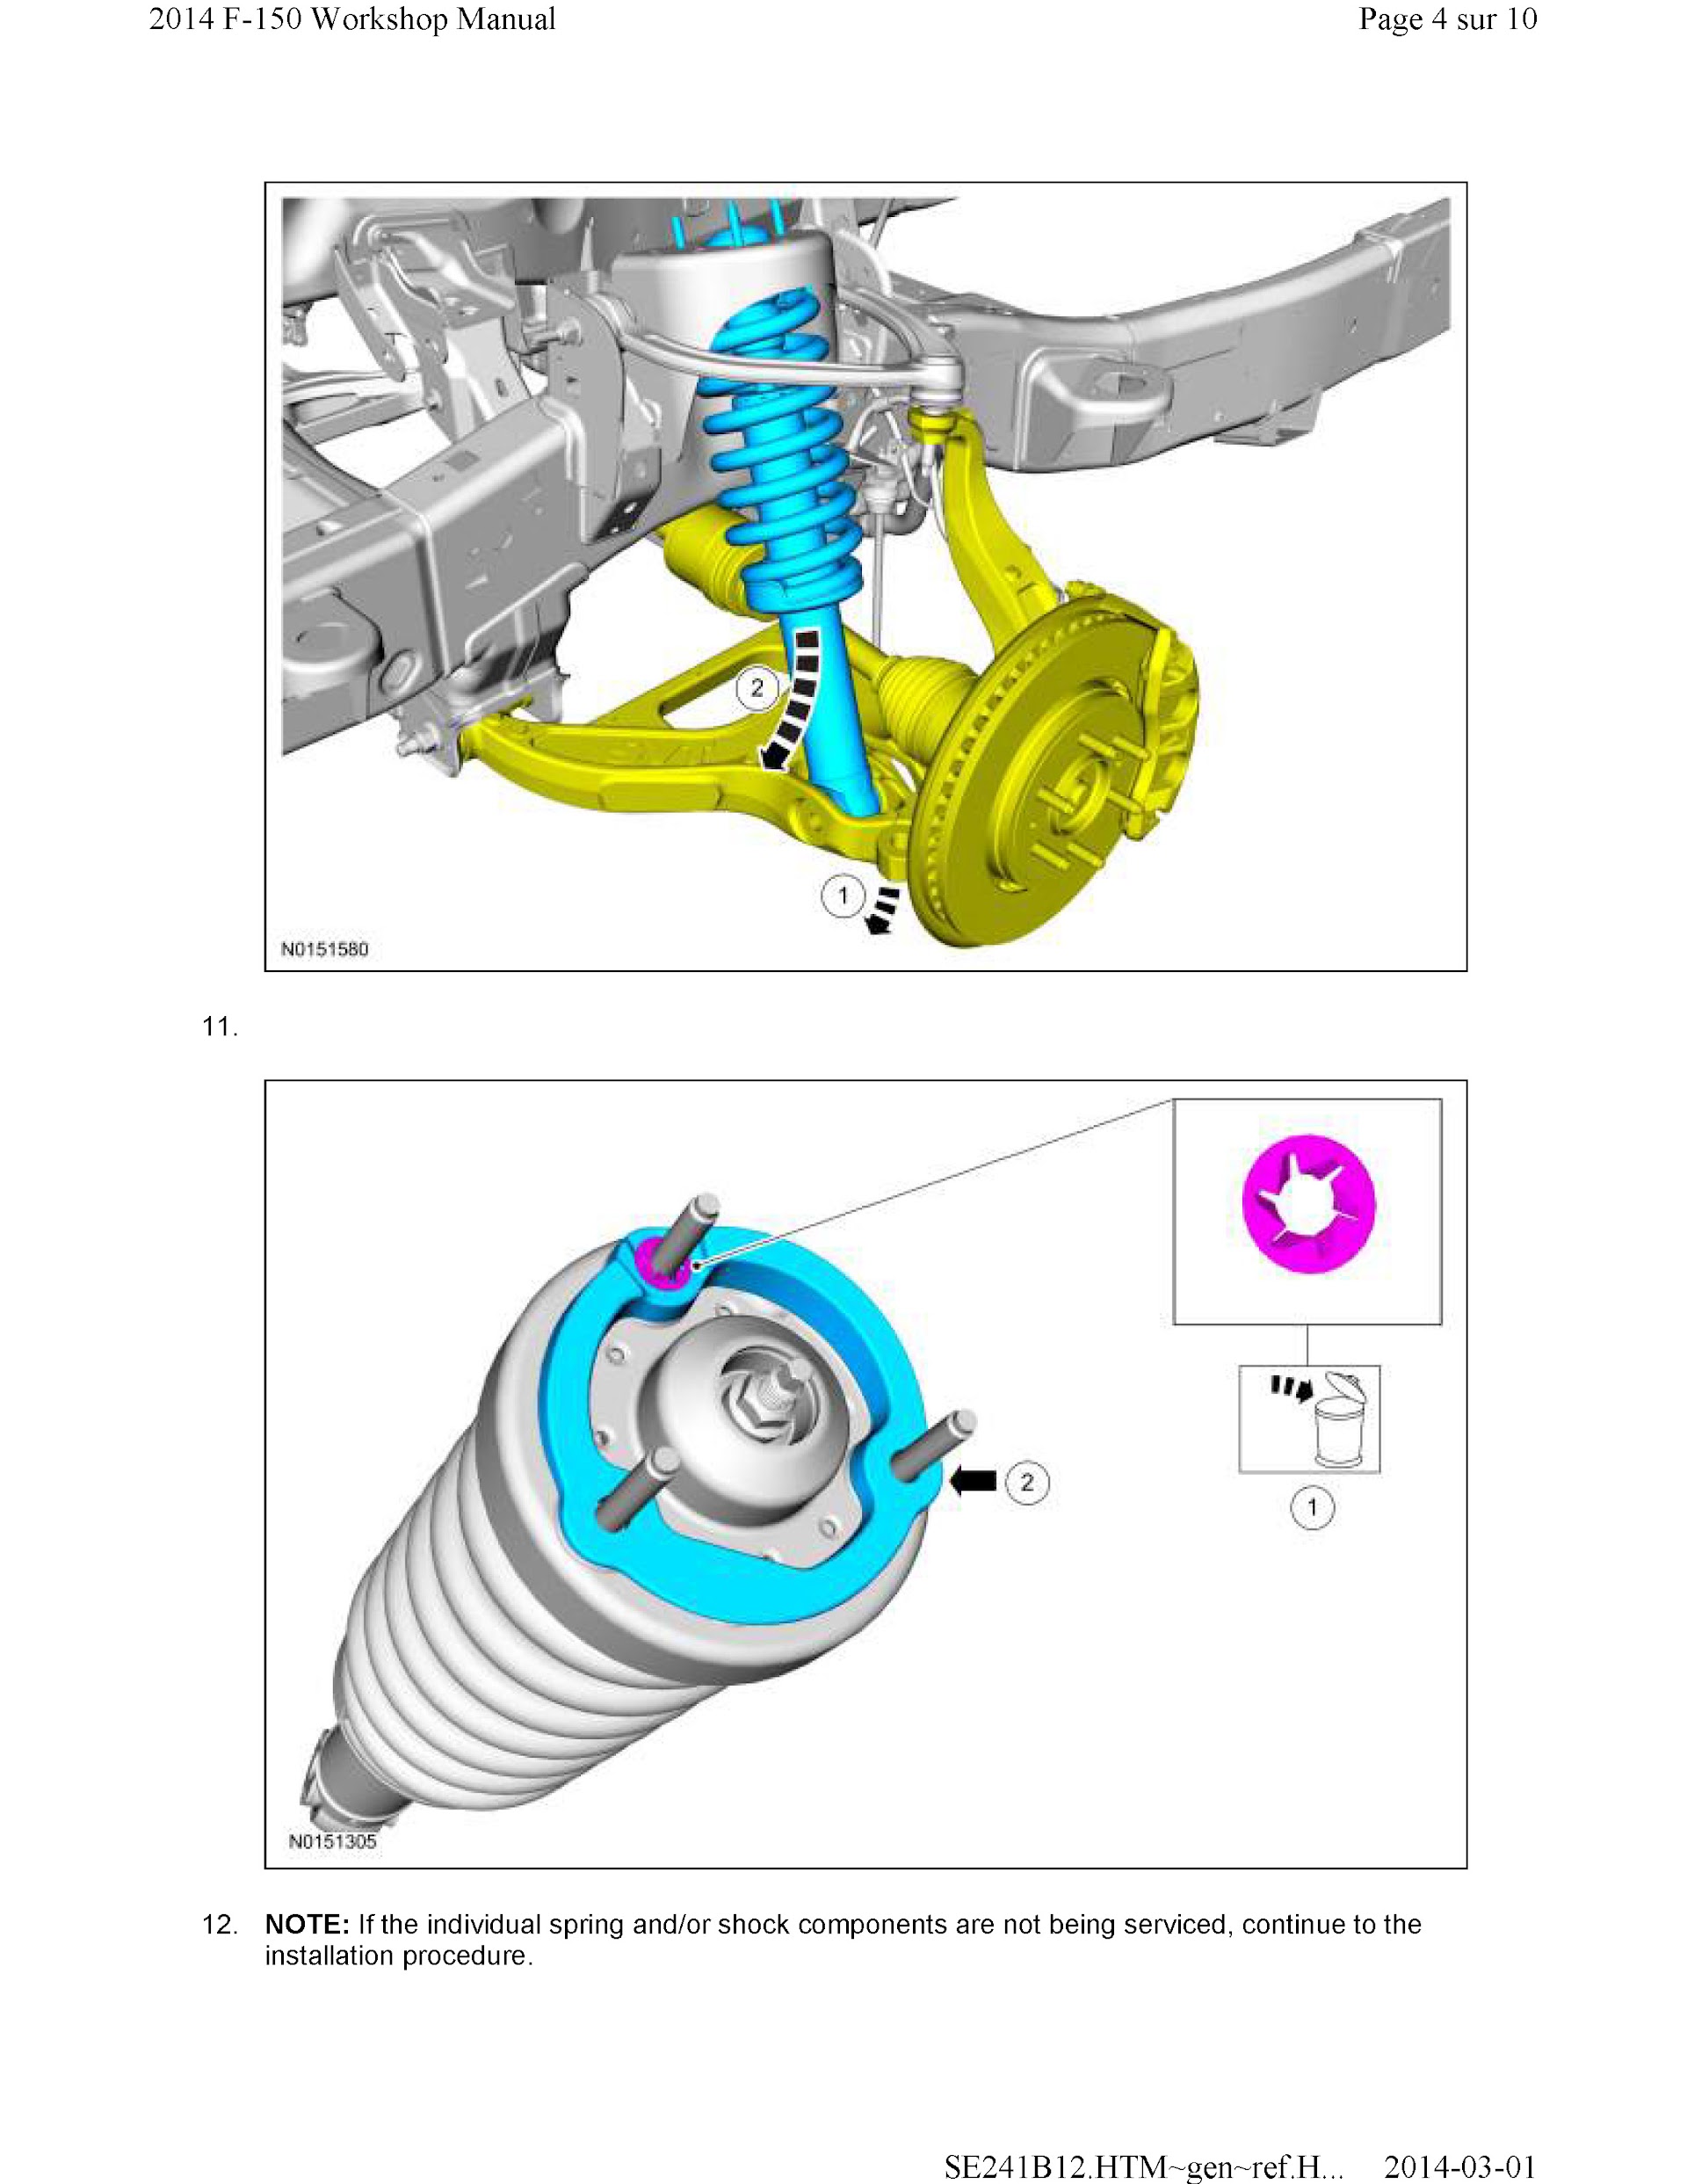 Download 2011-2014 Ford F-150 Repair Manual